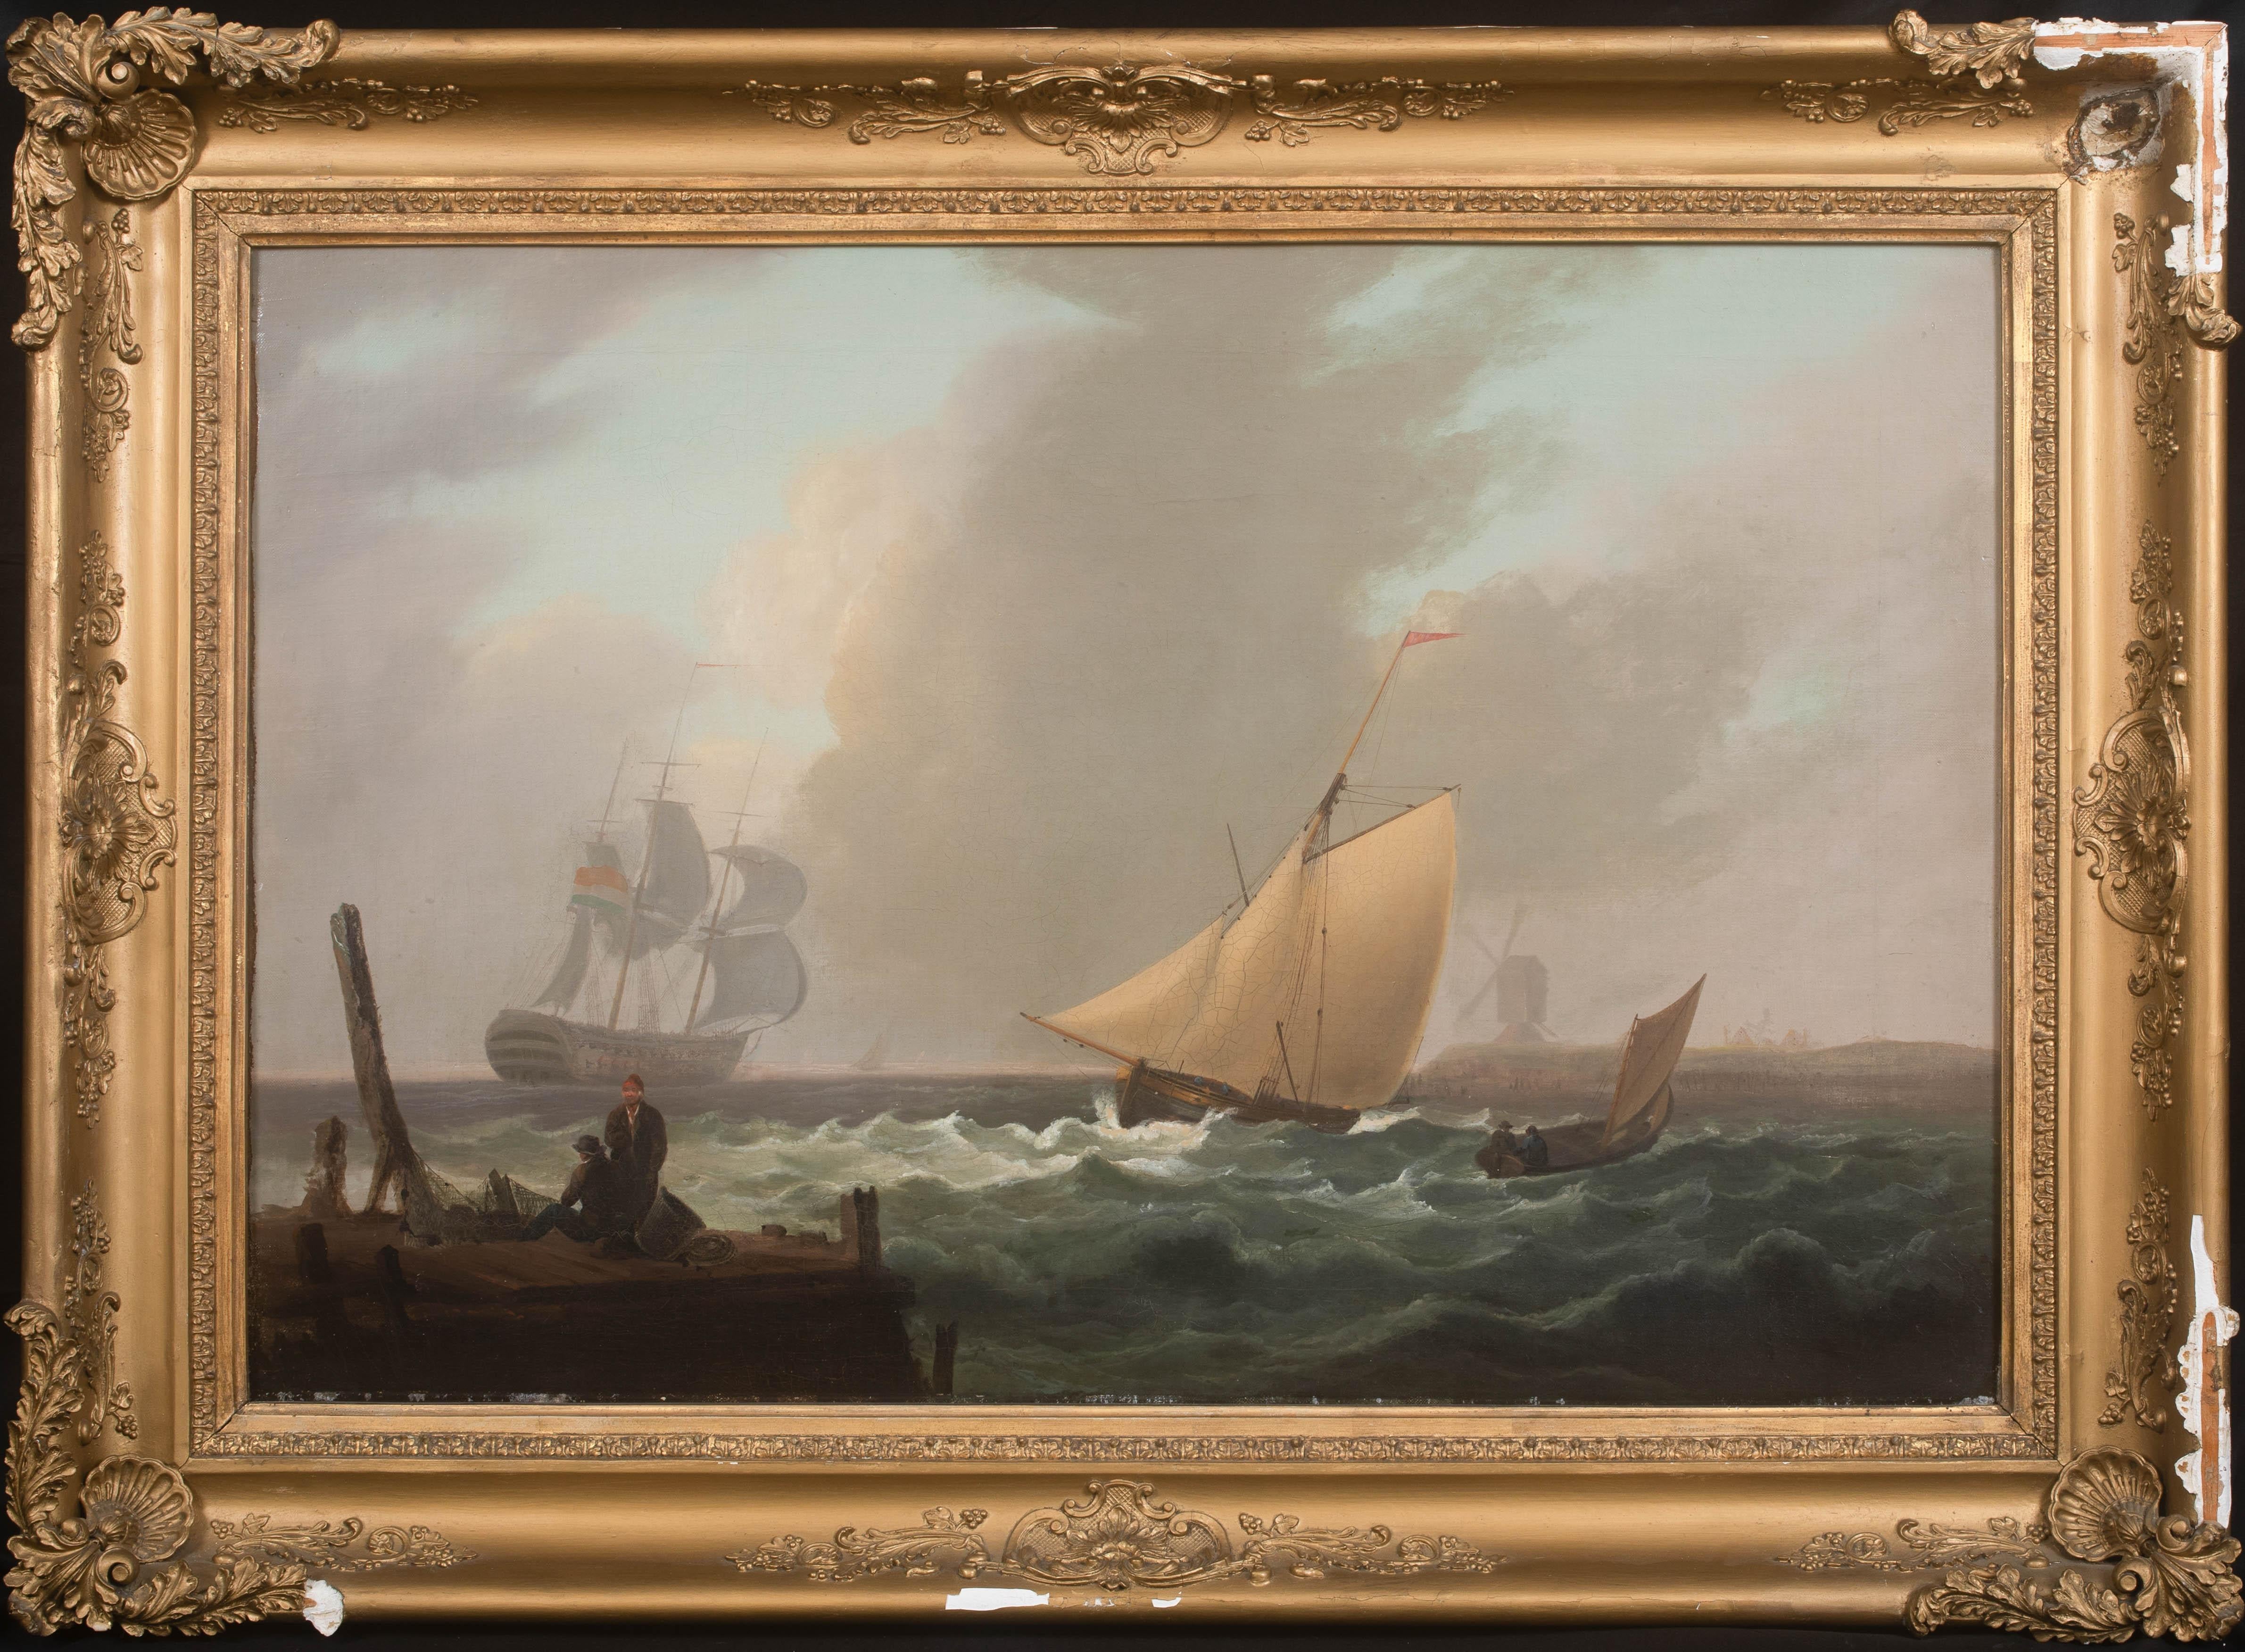 Landscape Painting Thomas Luny - Navires naviguant au large de la côte, vers 1800  Thomas LUNY (1759-1837) - une paire